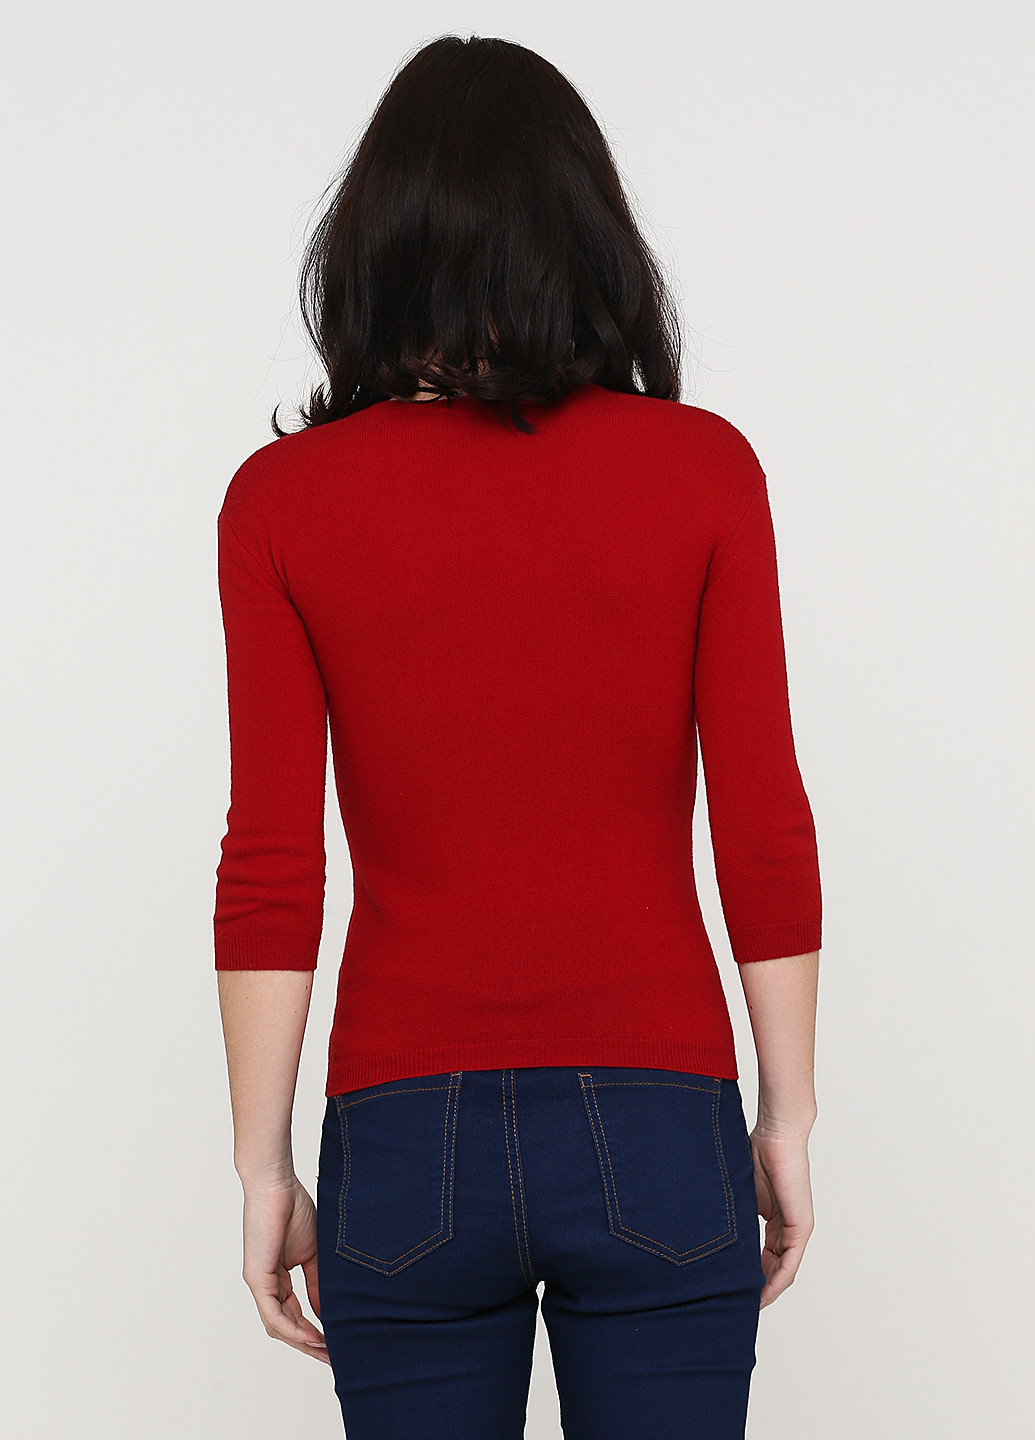 Бордовый демисезонный пуловер пуловер Dsquared